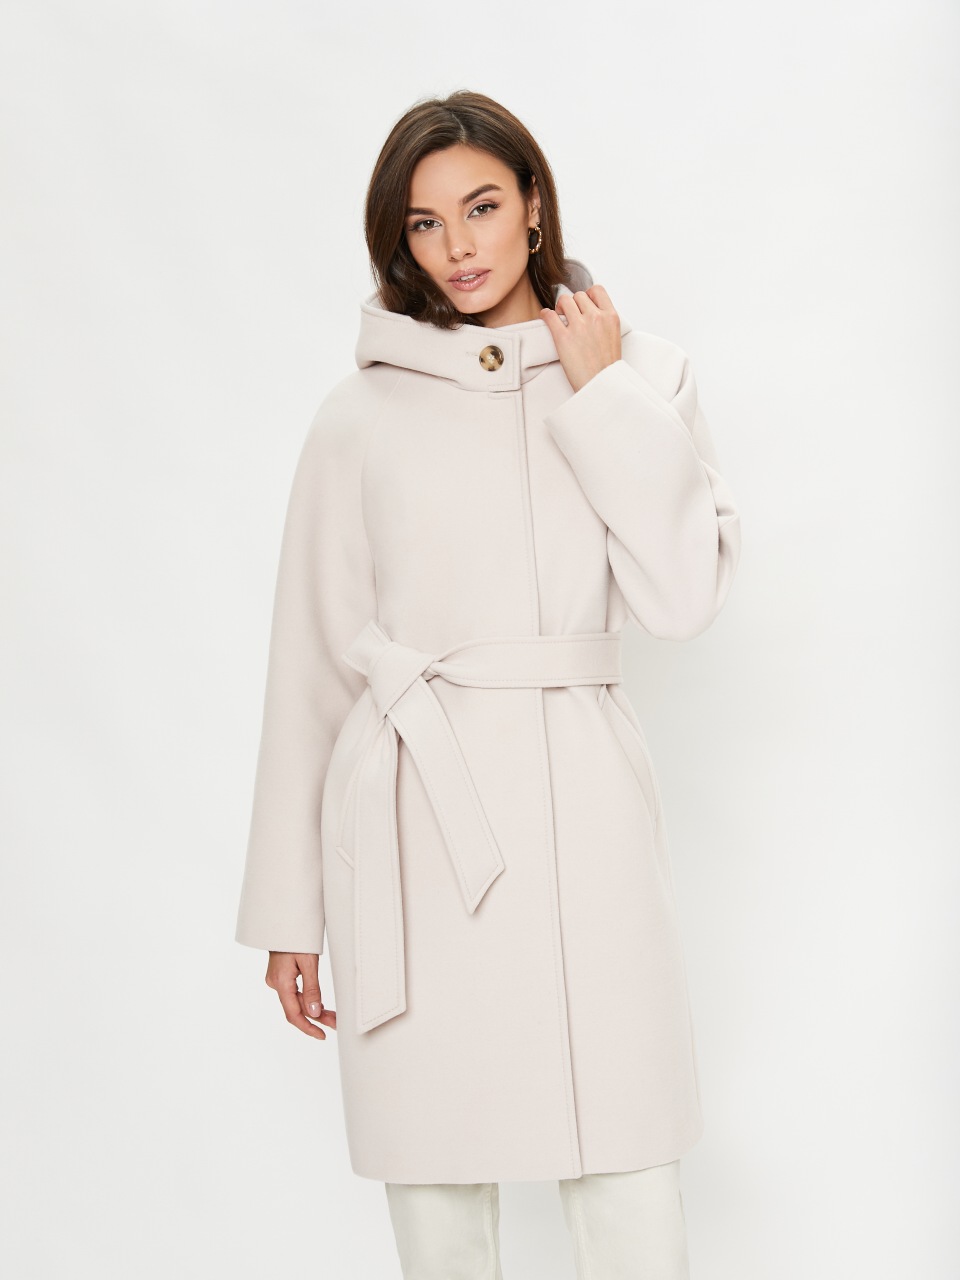 Пальто женское ElectraStyle 4-2103/1-0169 белое 44 RU